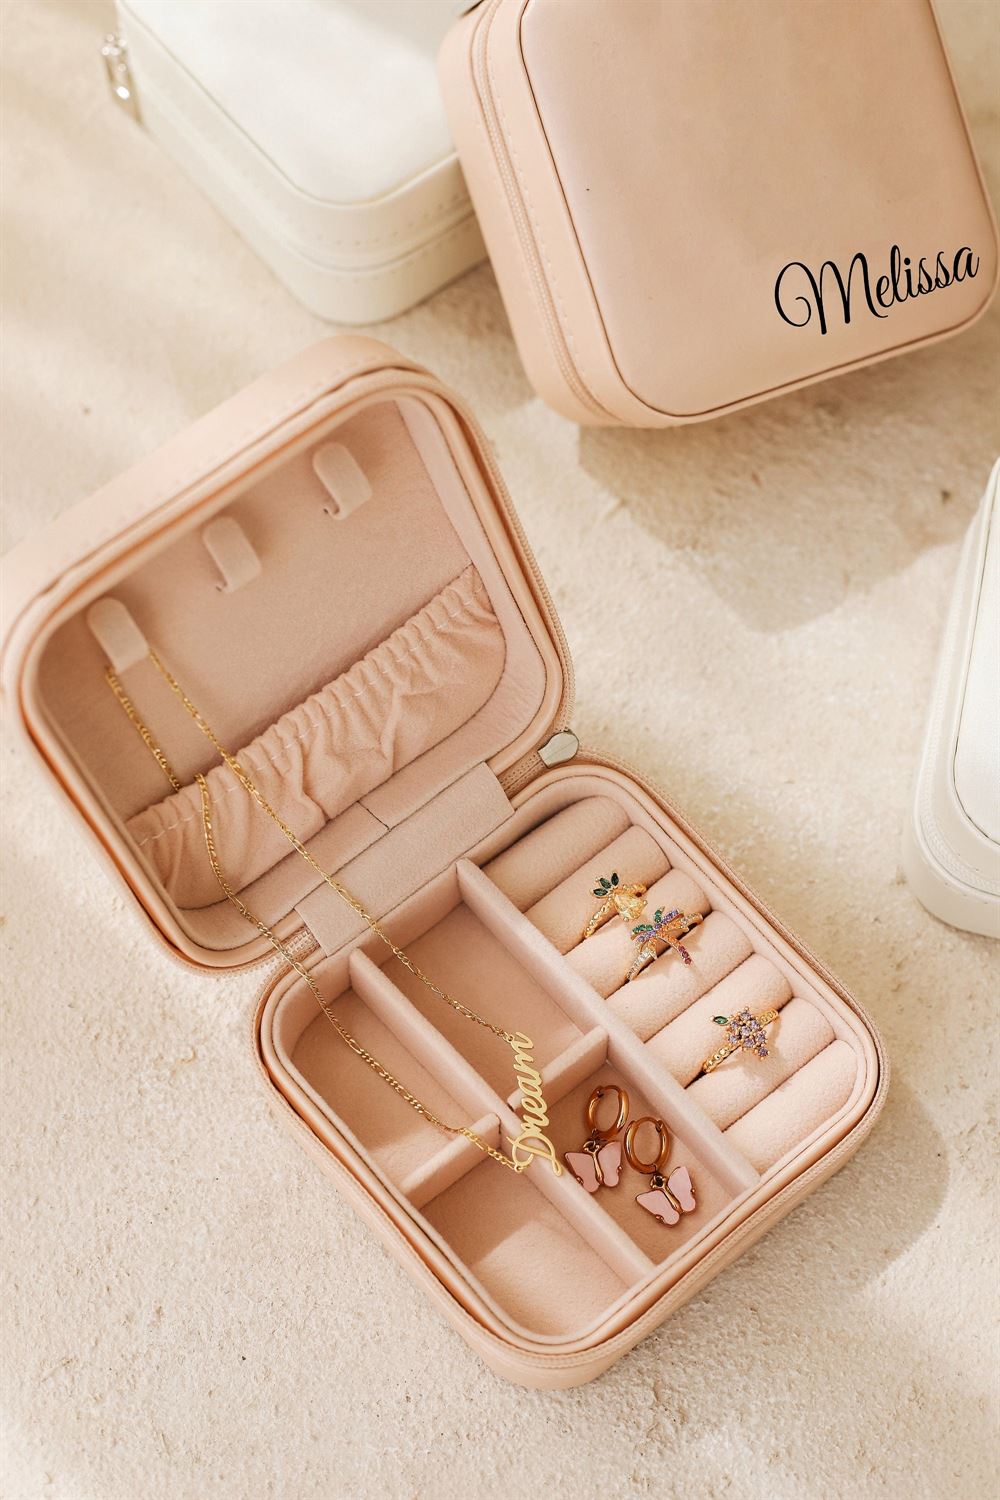 Personalized Travel Jewelry Case, Bridesmaid Jewelry Box, Jewelry Organizer, Mother's Day Jewelry Box, Gift For Her, Travel Jewelry Case